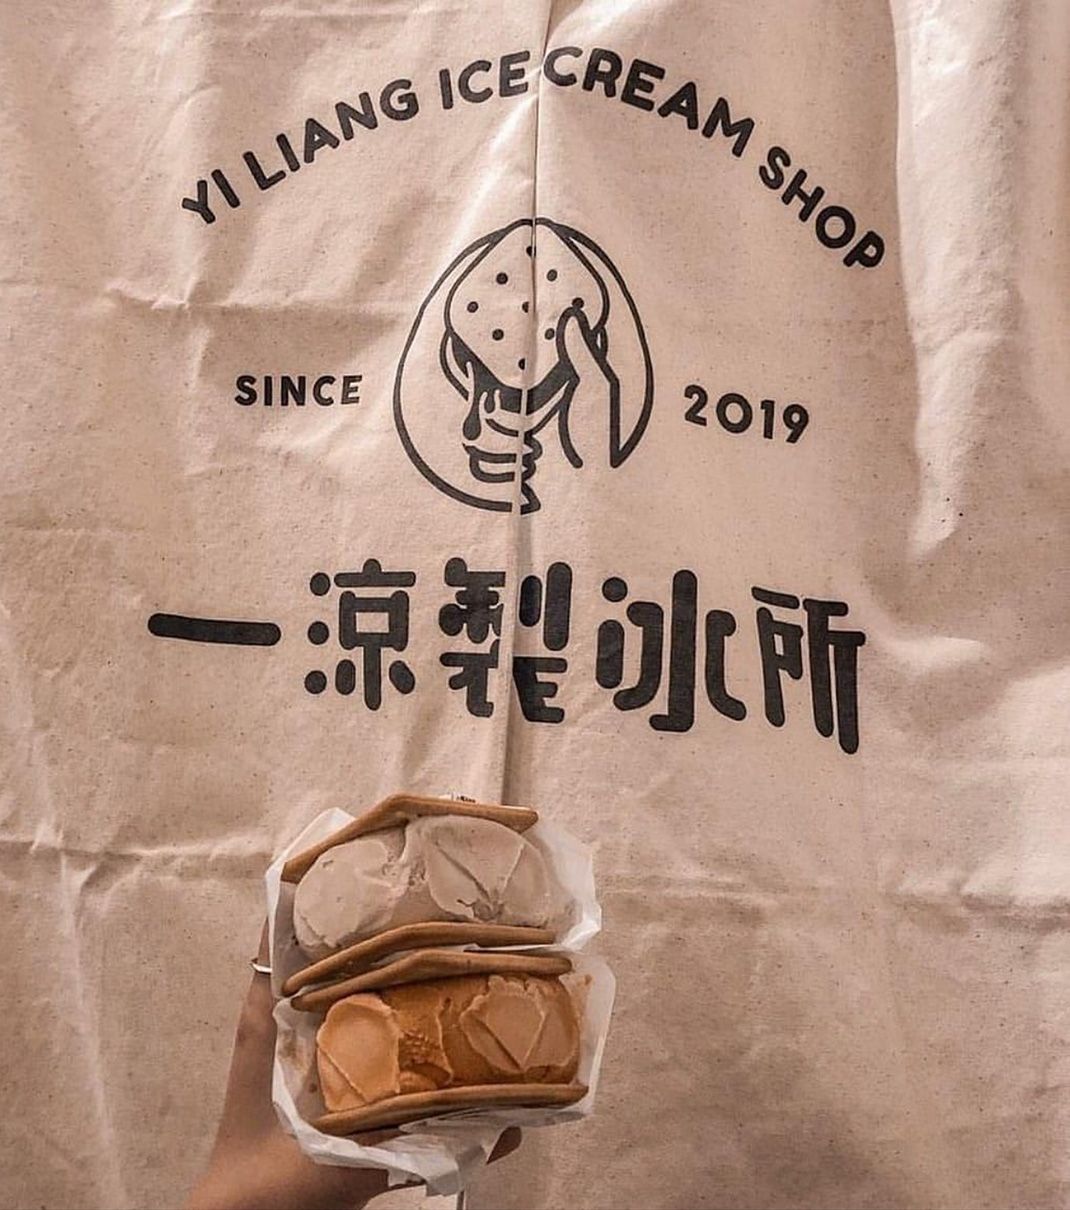 一凉制冰所logo设计 台湾 饮品店 制冰所 字体设计 插图设计 logo设计 vi设计 空间设计 视觉餐饮